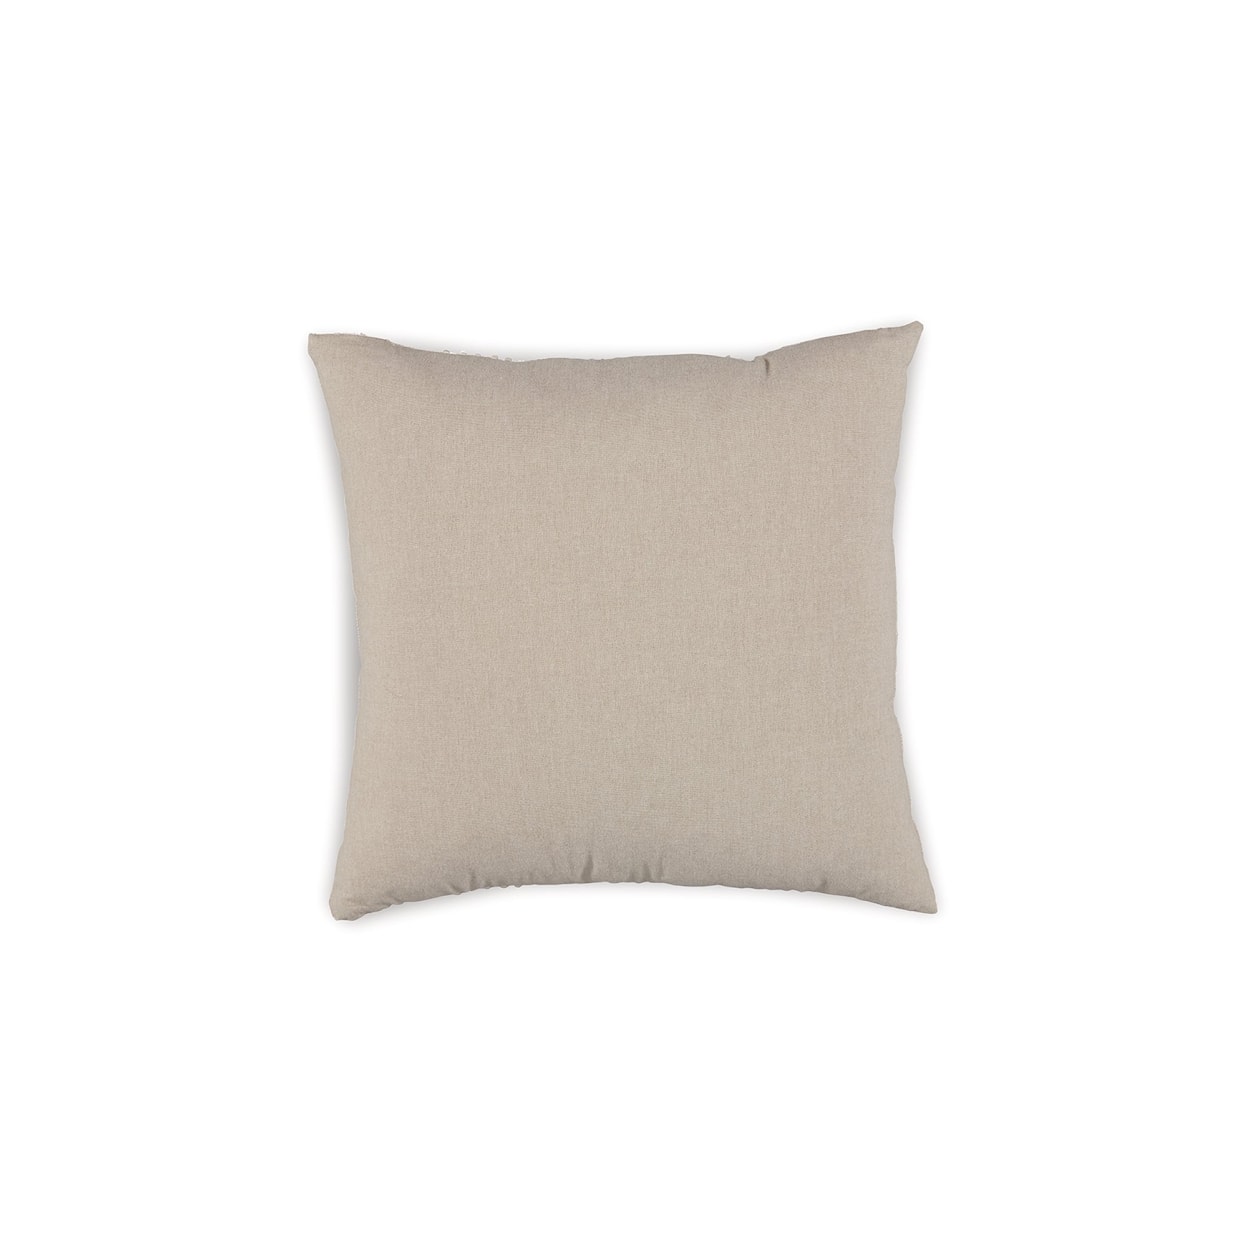 Benchcraft Benbert Pillow (Set of 4)